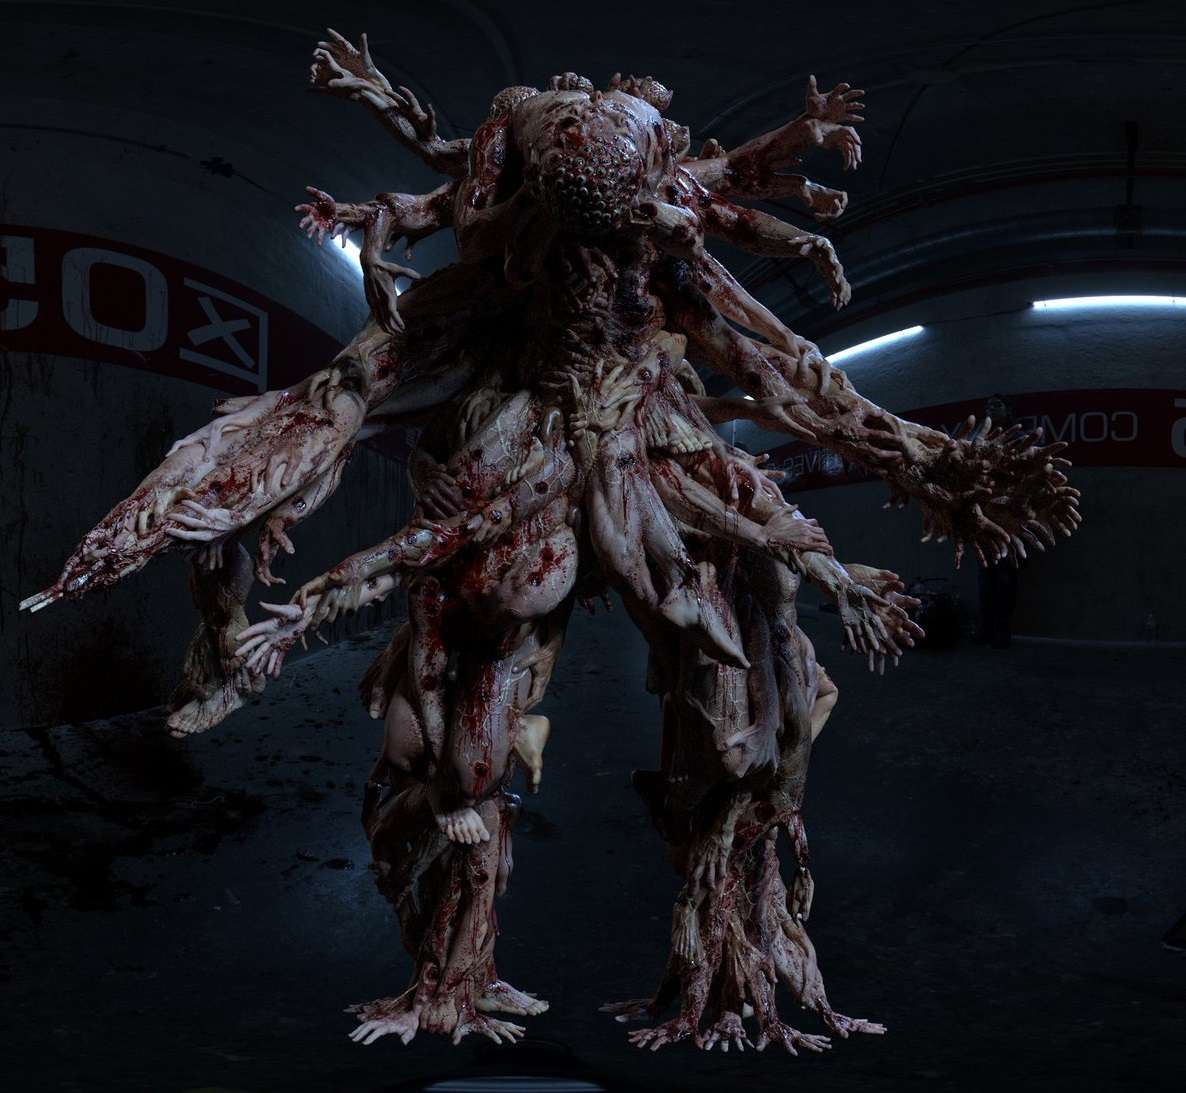 Zygote the Flesh Monster- Oats Studios Short Horror Film